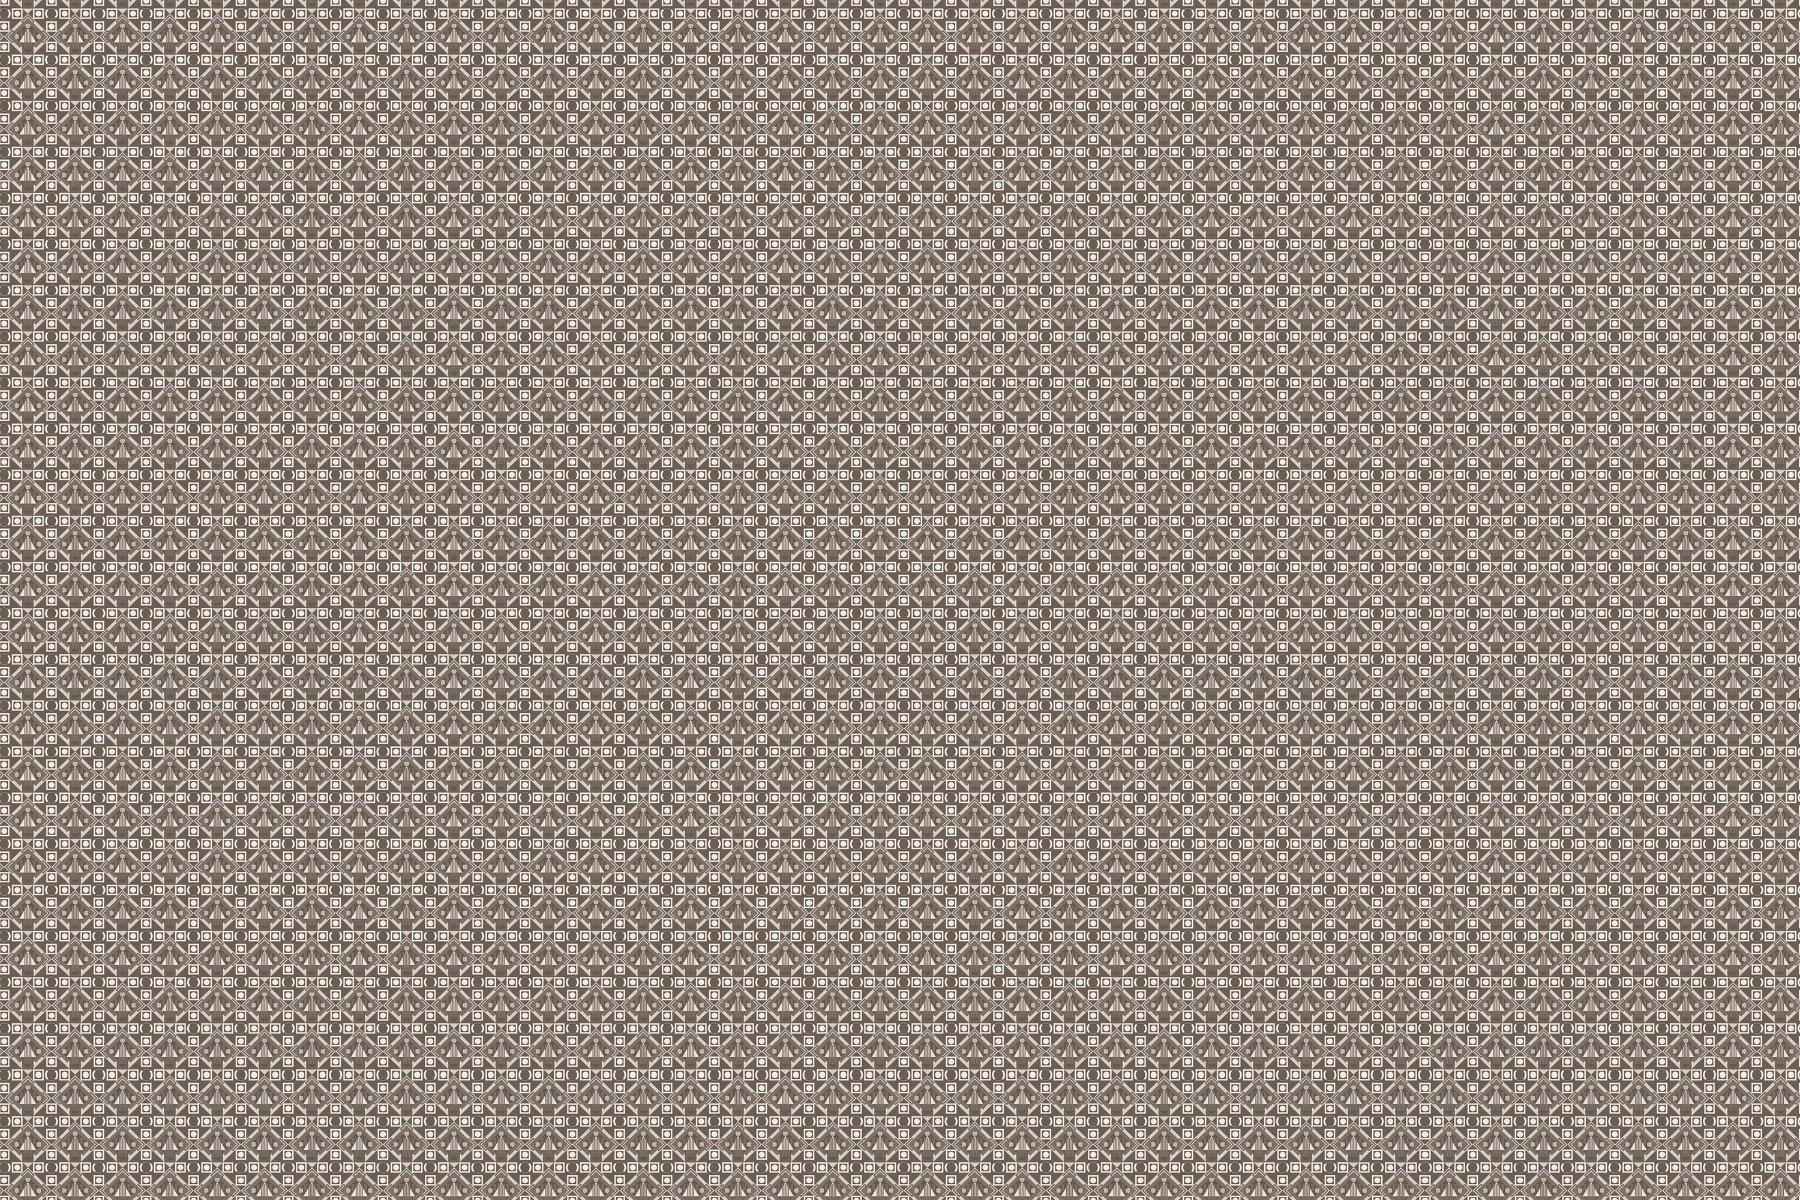 Pattern Tiles for Bathroom Tiles, Kitchen Tiles, Balcony Tiles